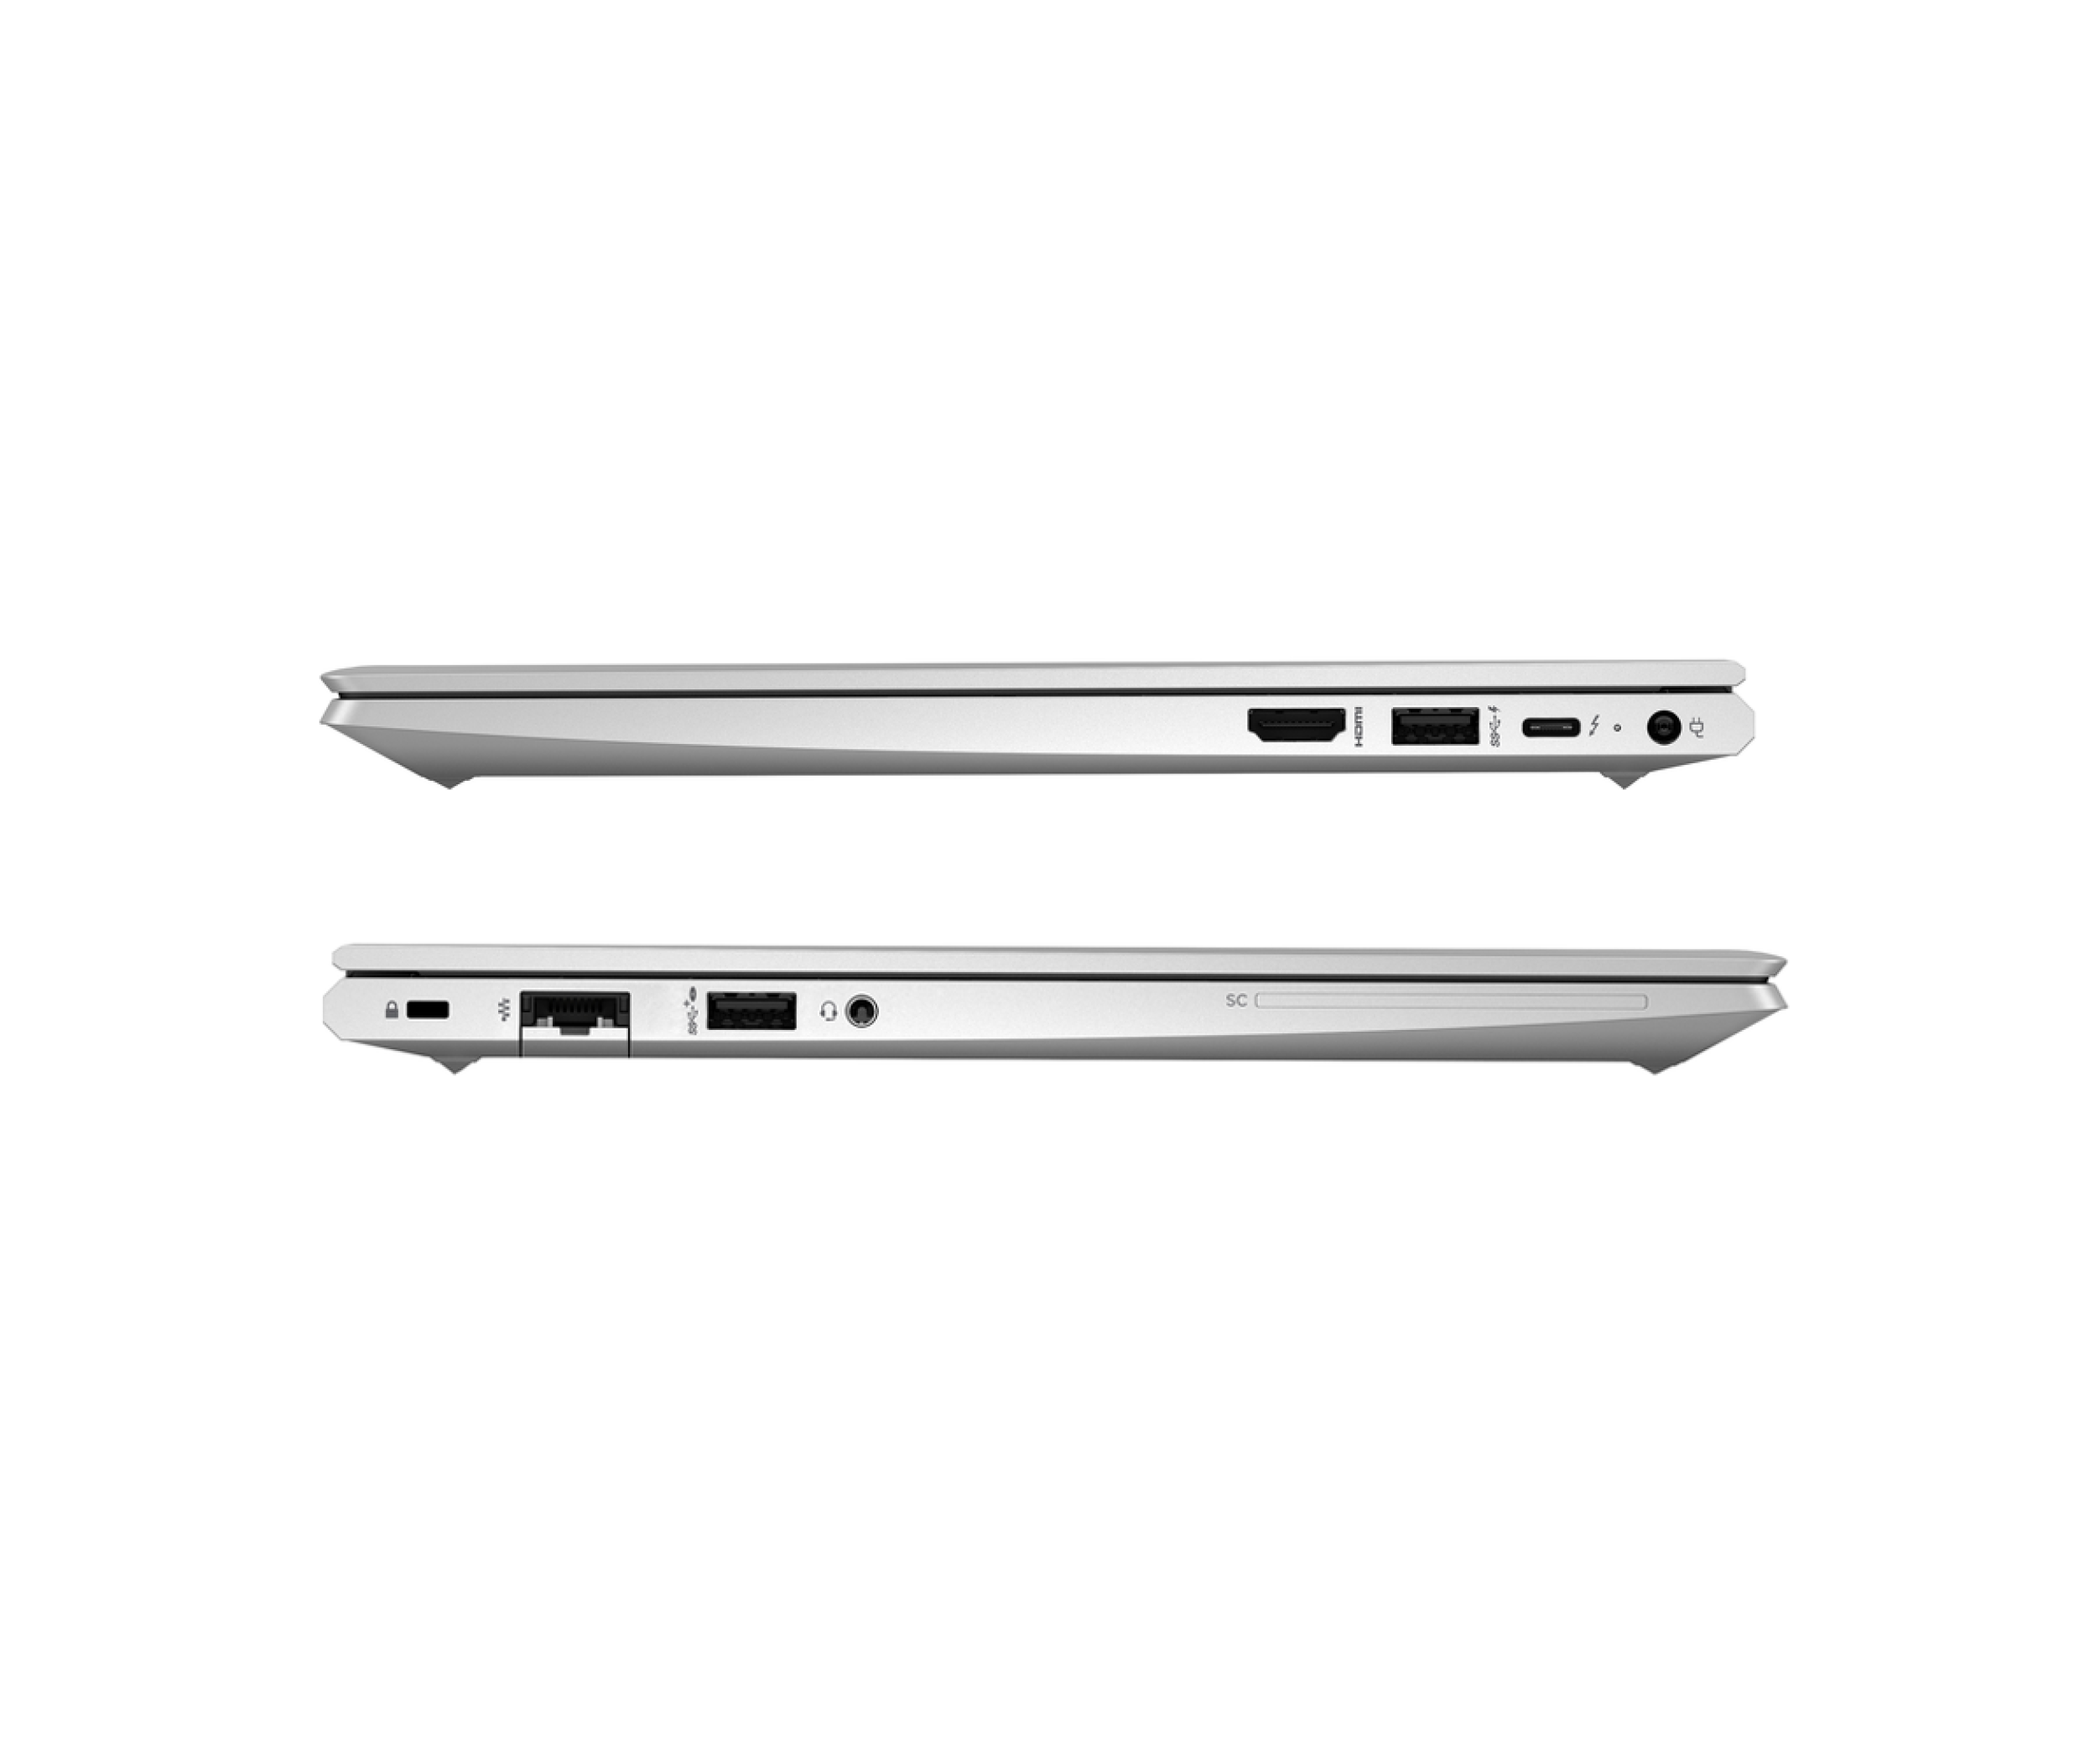  خرید و قیمت لپ تاپ HP EliteBook 630 G9 پردازنده Core i3 1215u | لاکچری لپ تاپ 